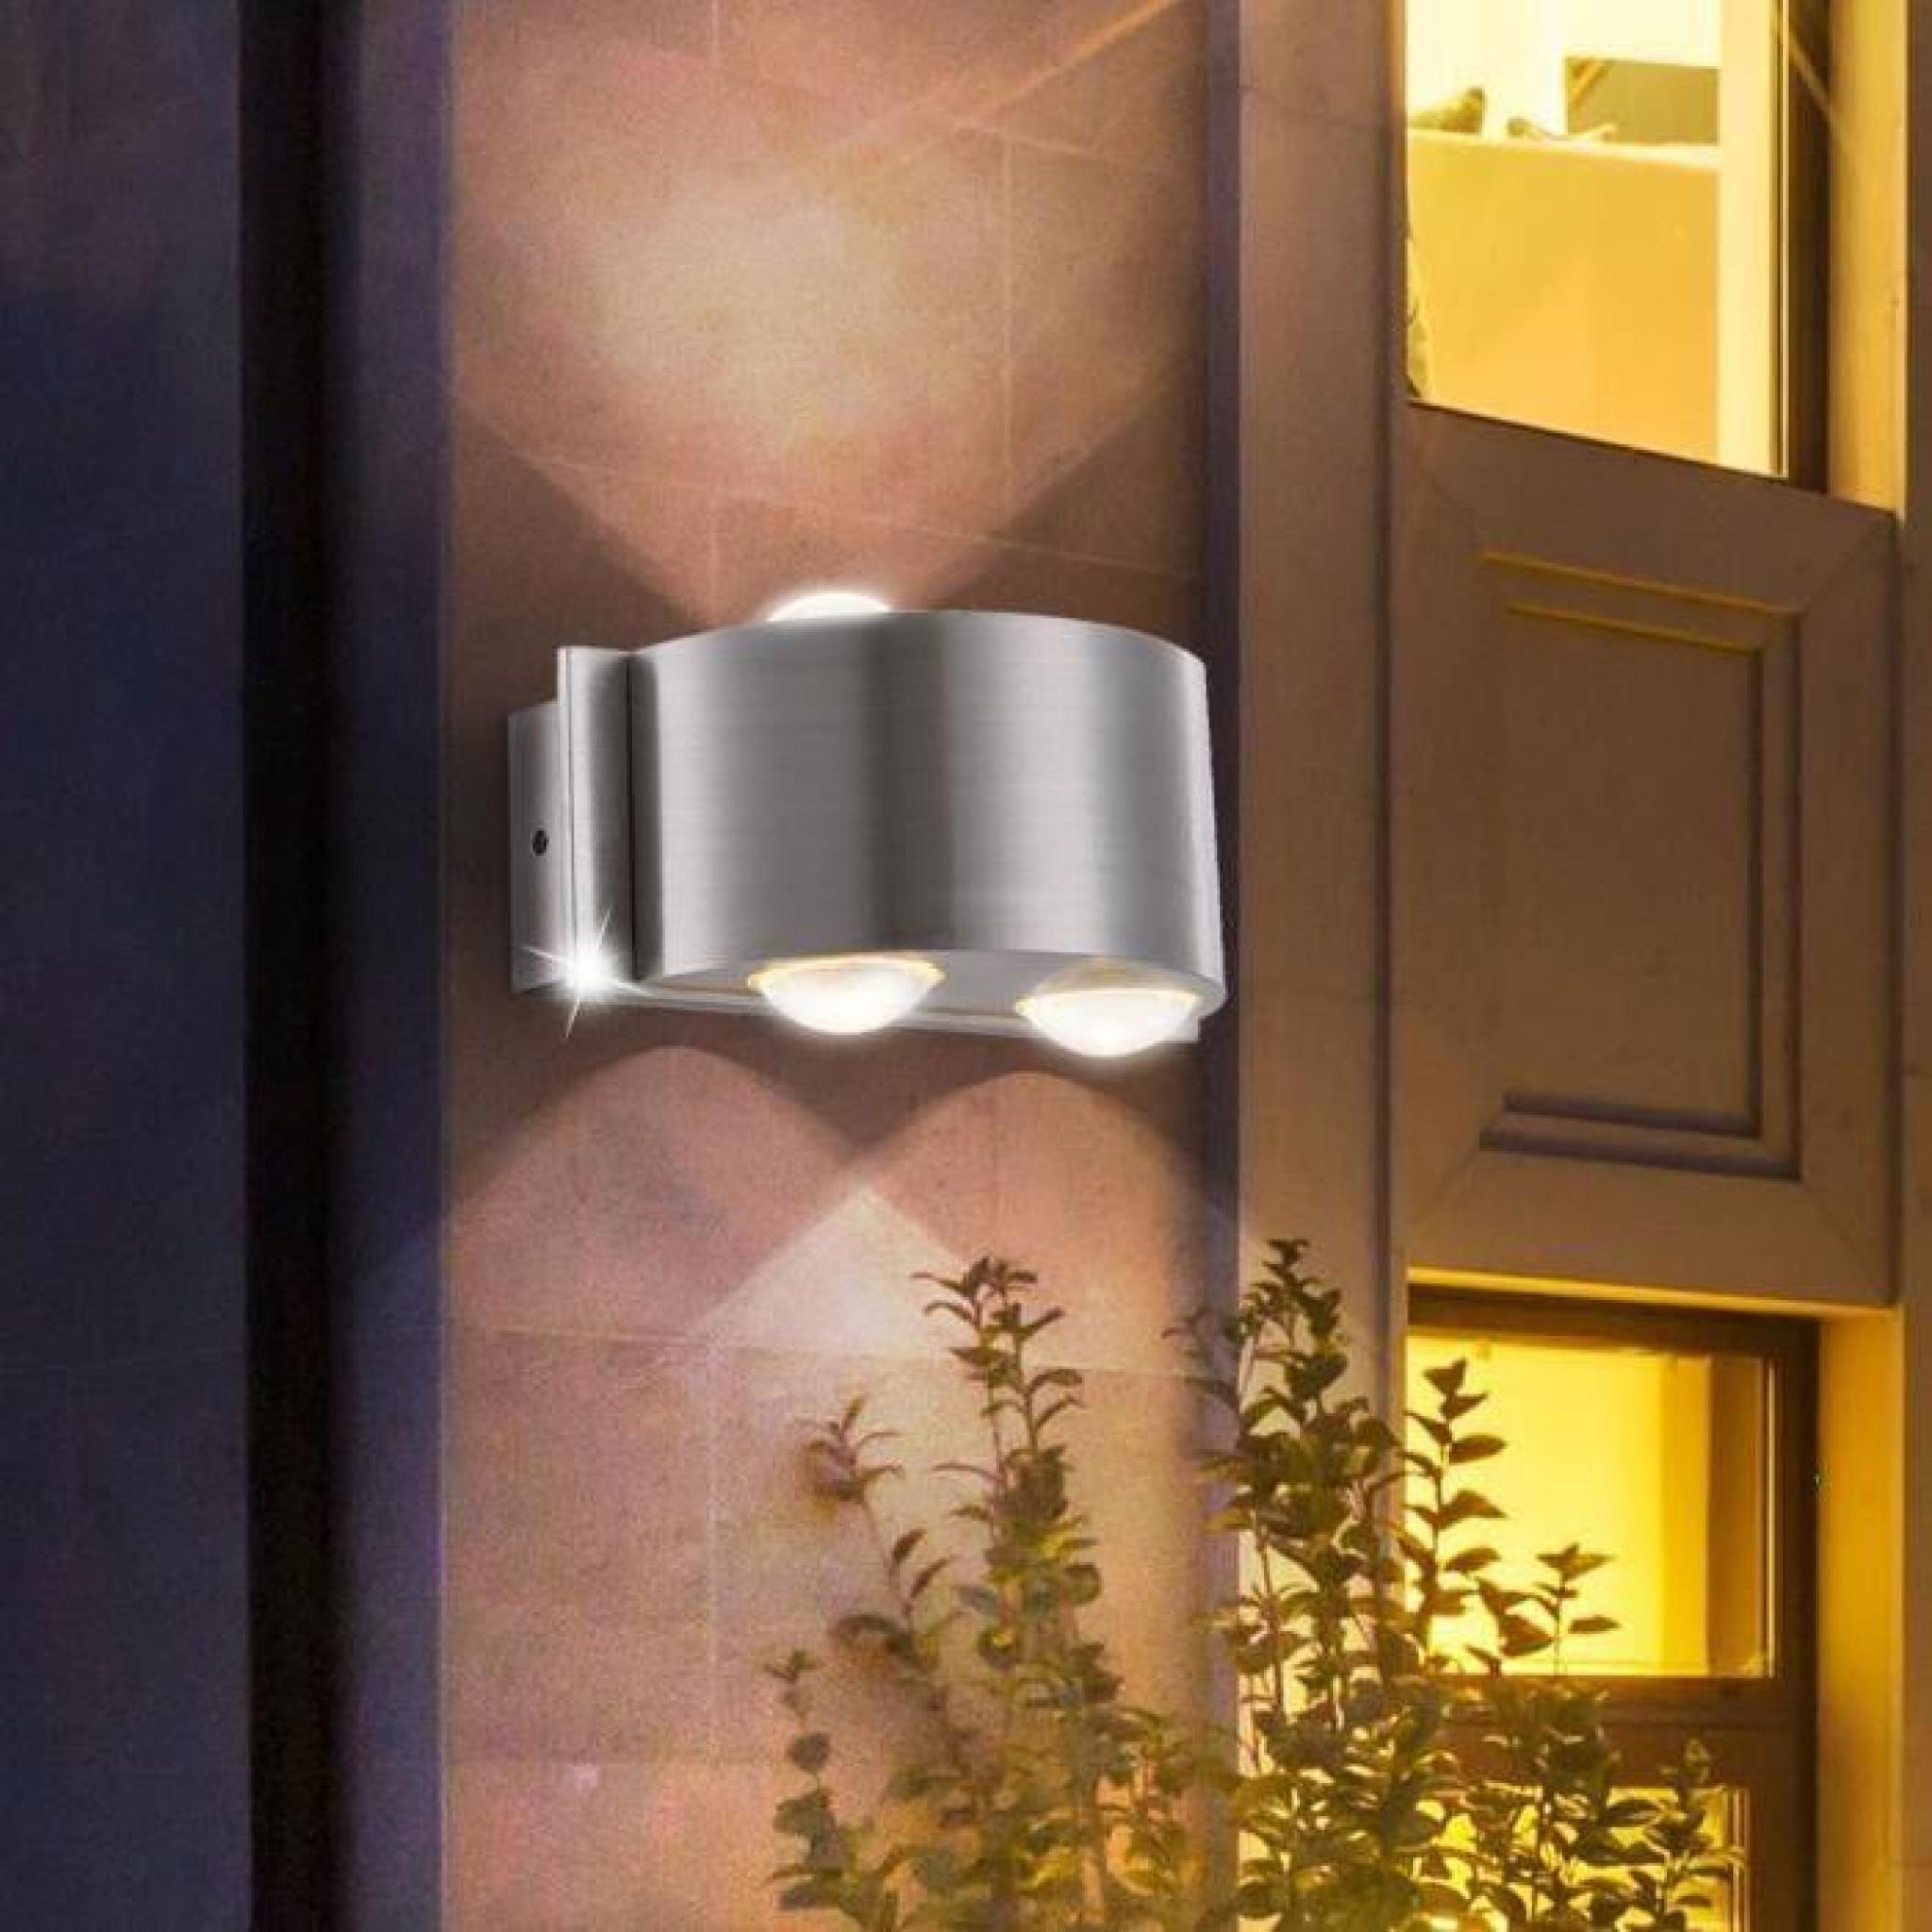 Applique DEL luminaire mural lampe espace extérieur LED jardin terrasse balcon pas cher